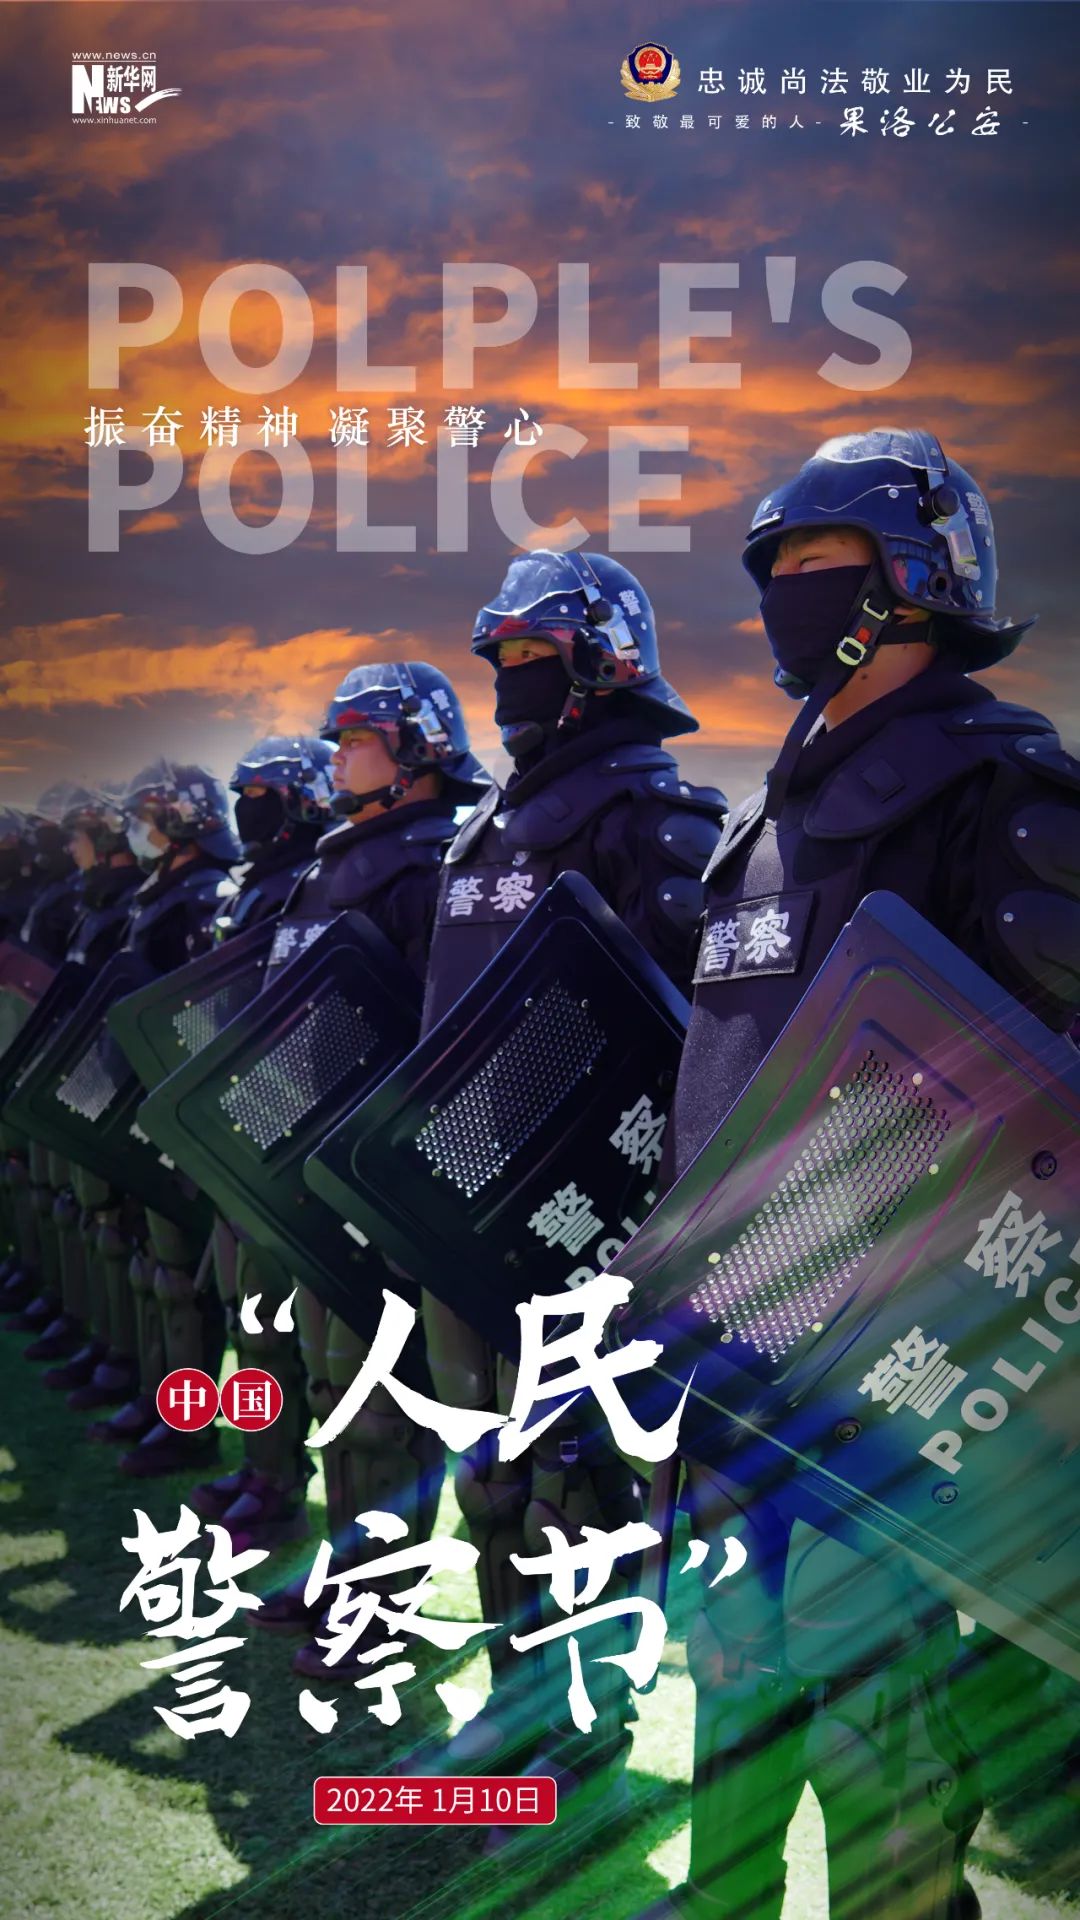 喜迎警察节 欢庆丰收年丨你好,警察节!果洛公安海报来了